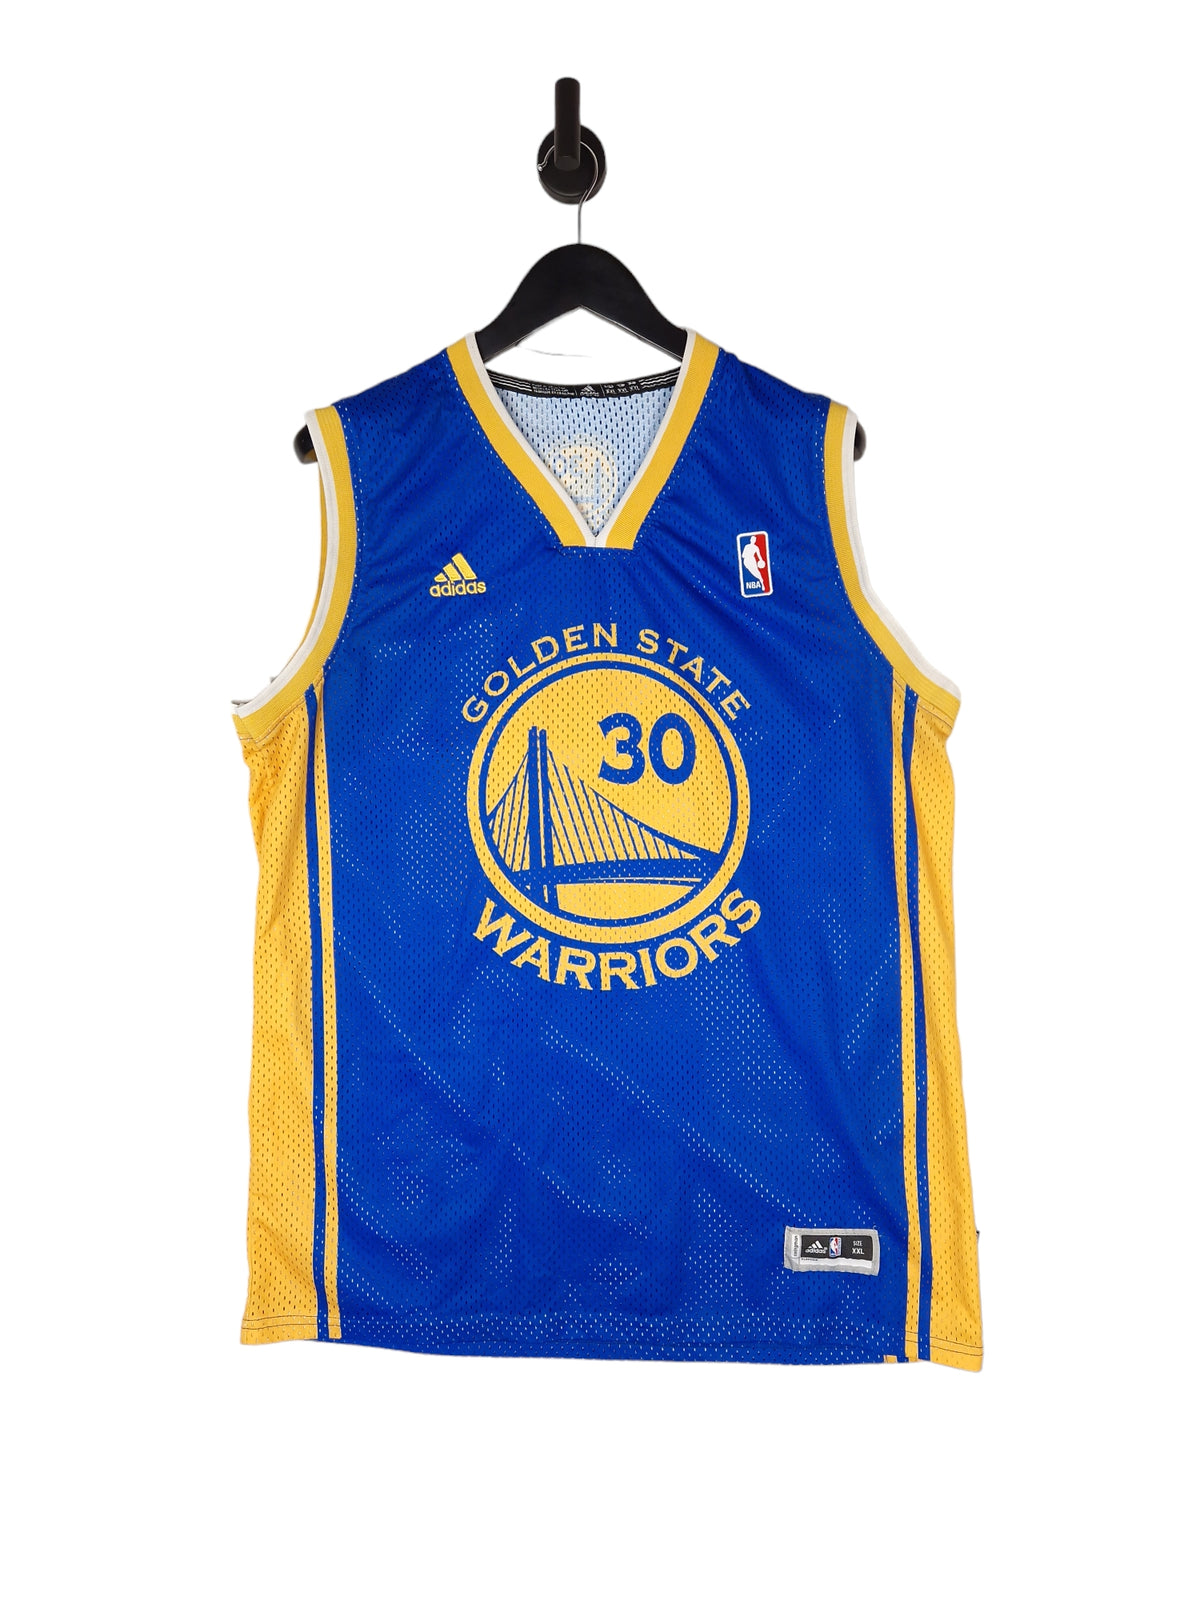 Adidas NBA Golden State Warriors Curry 30 Basketball Jersey - Size XXL